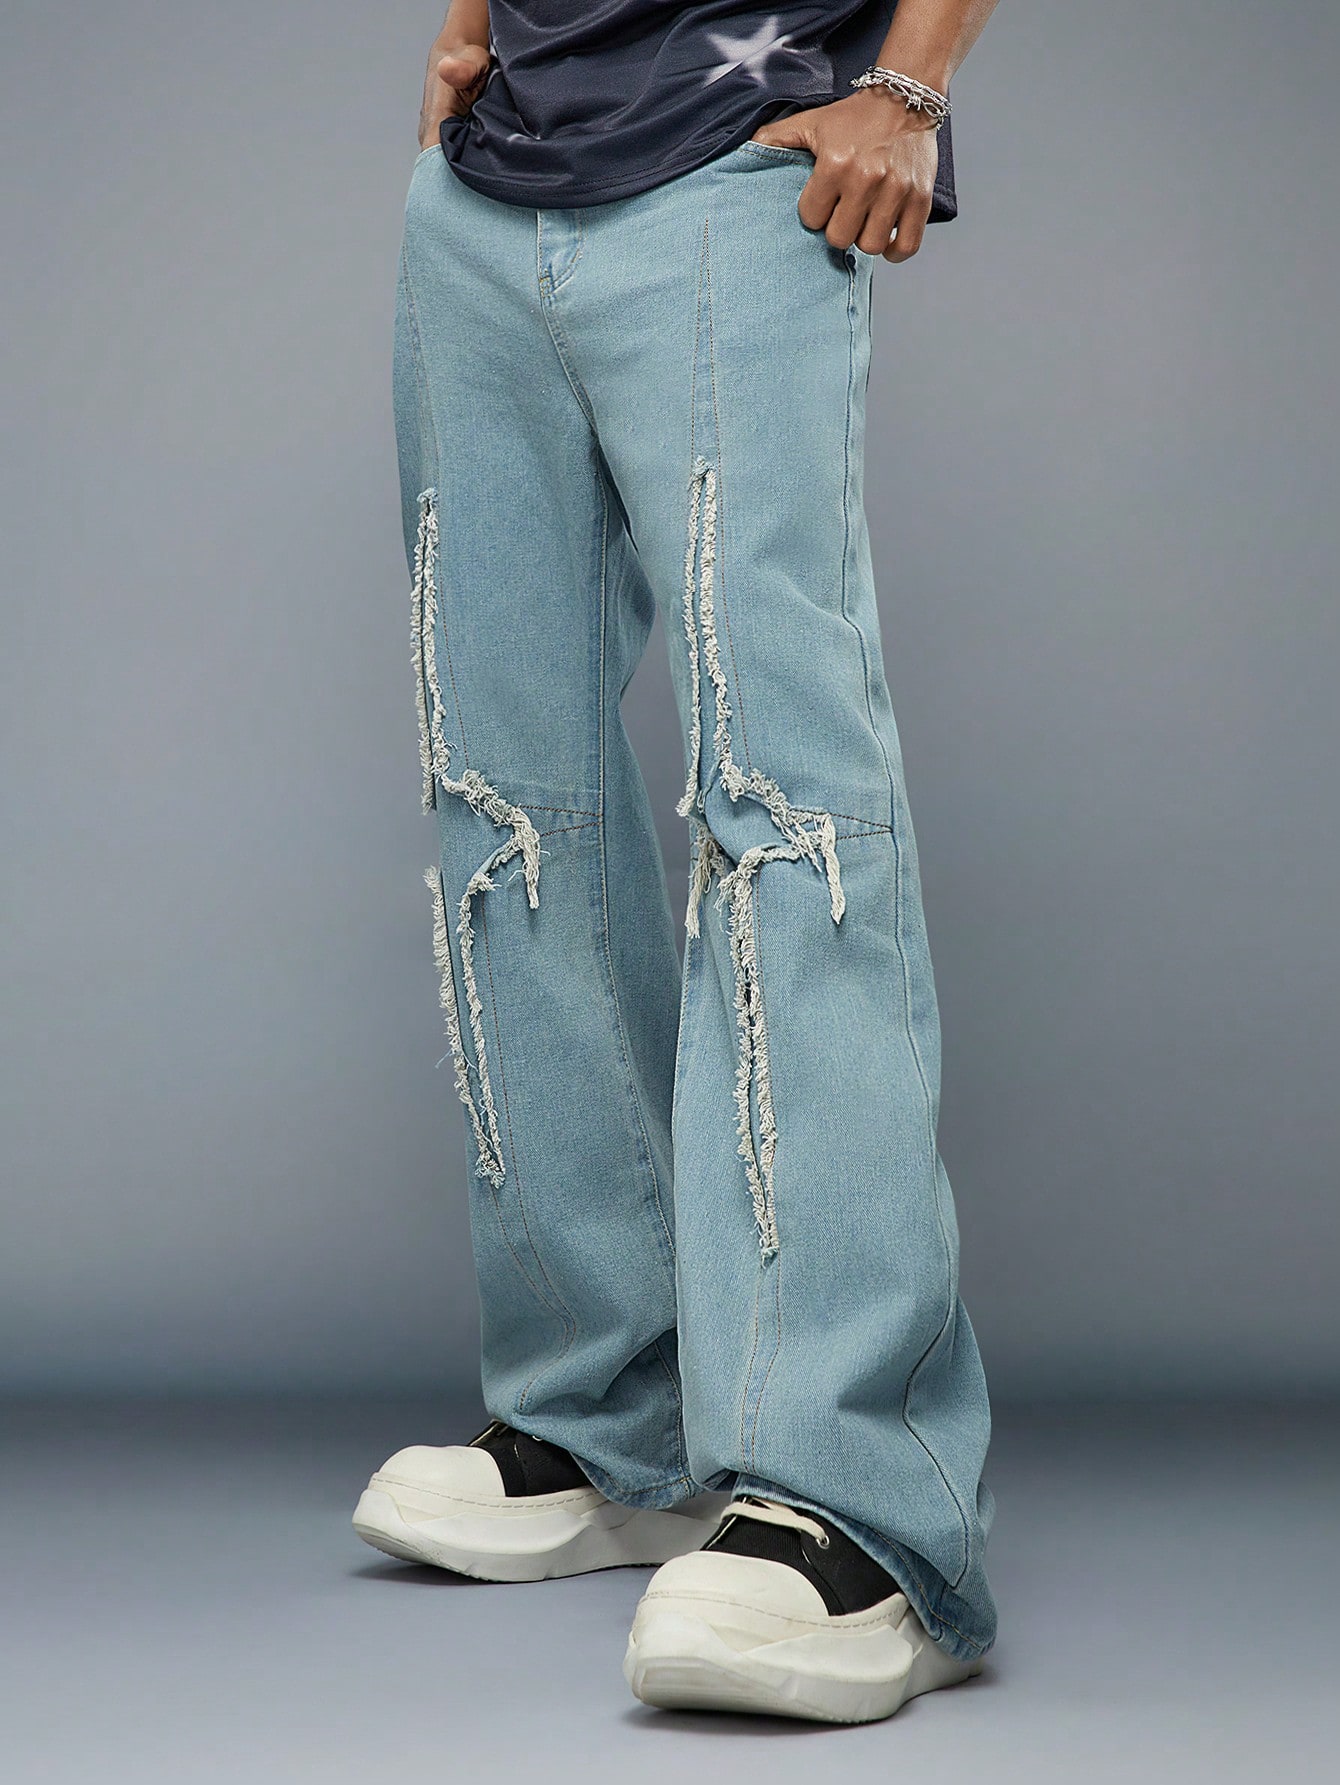 Мужские повседневные джинсы Manfinity EMRG с необработанной отделкой, синий джинсы zara повседневные 44 размер